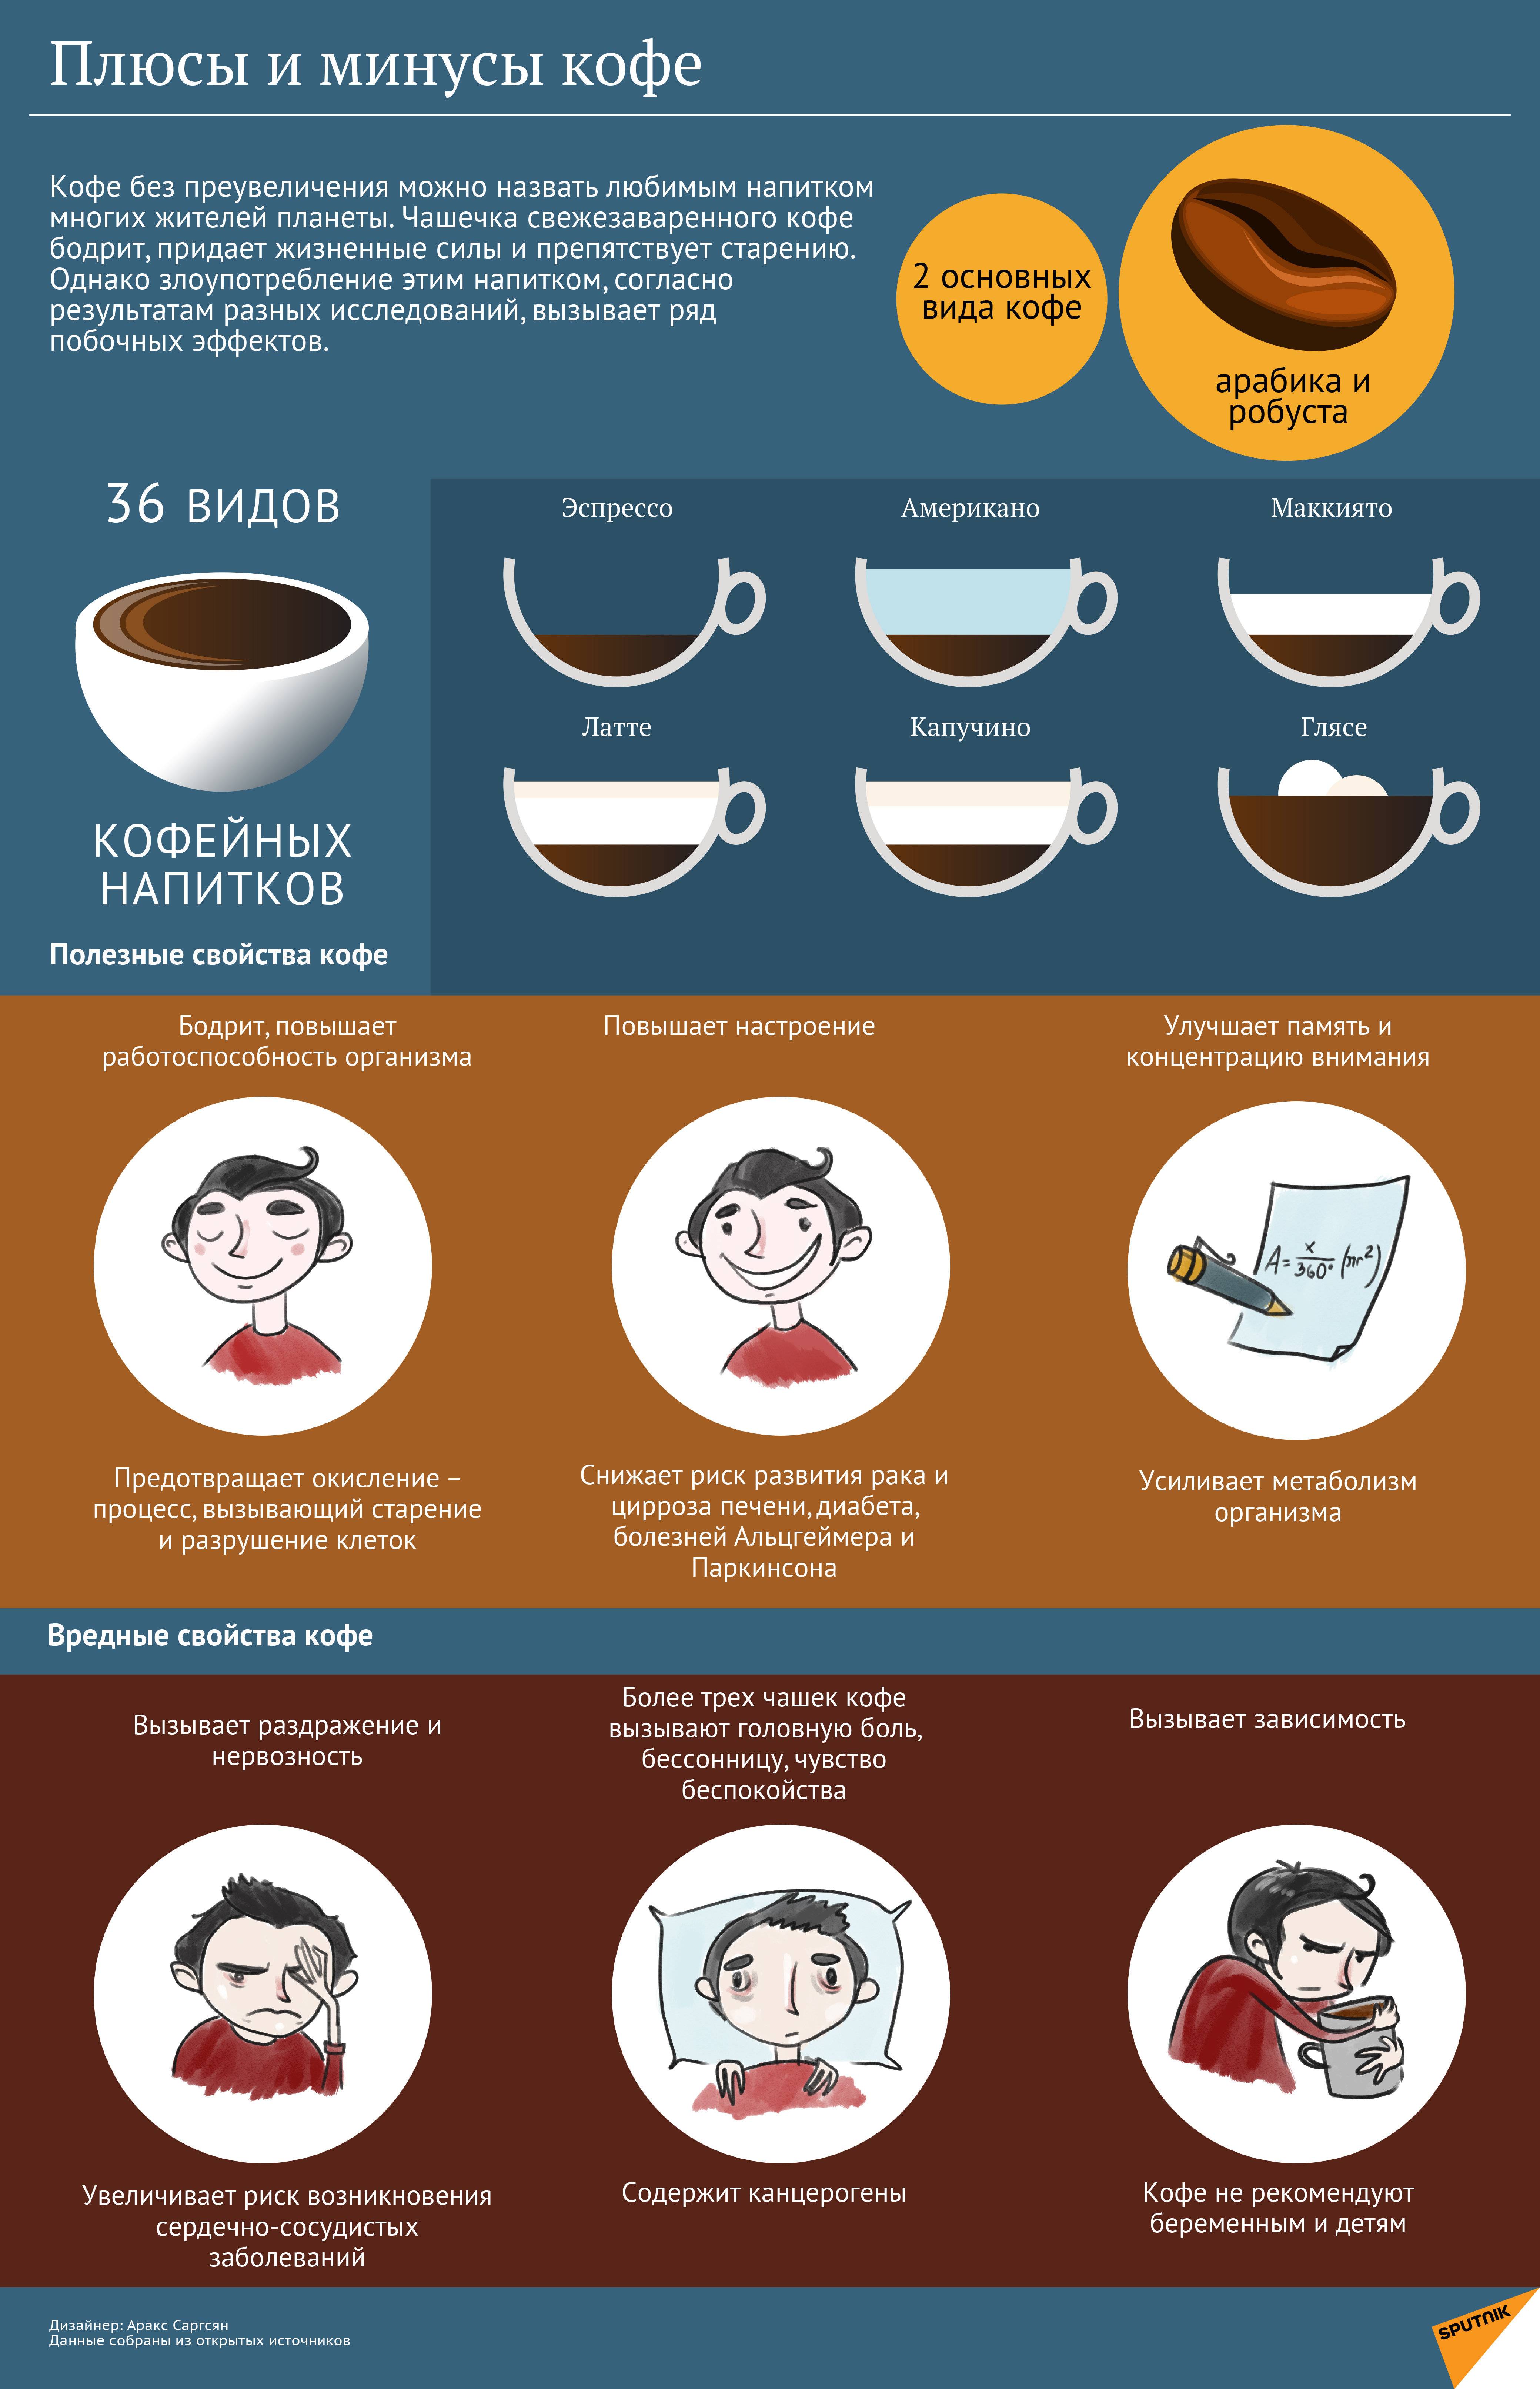 Можно ли пить кофе при похудении - мнение врачей